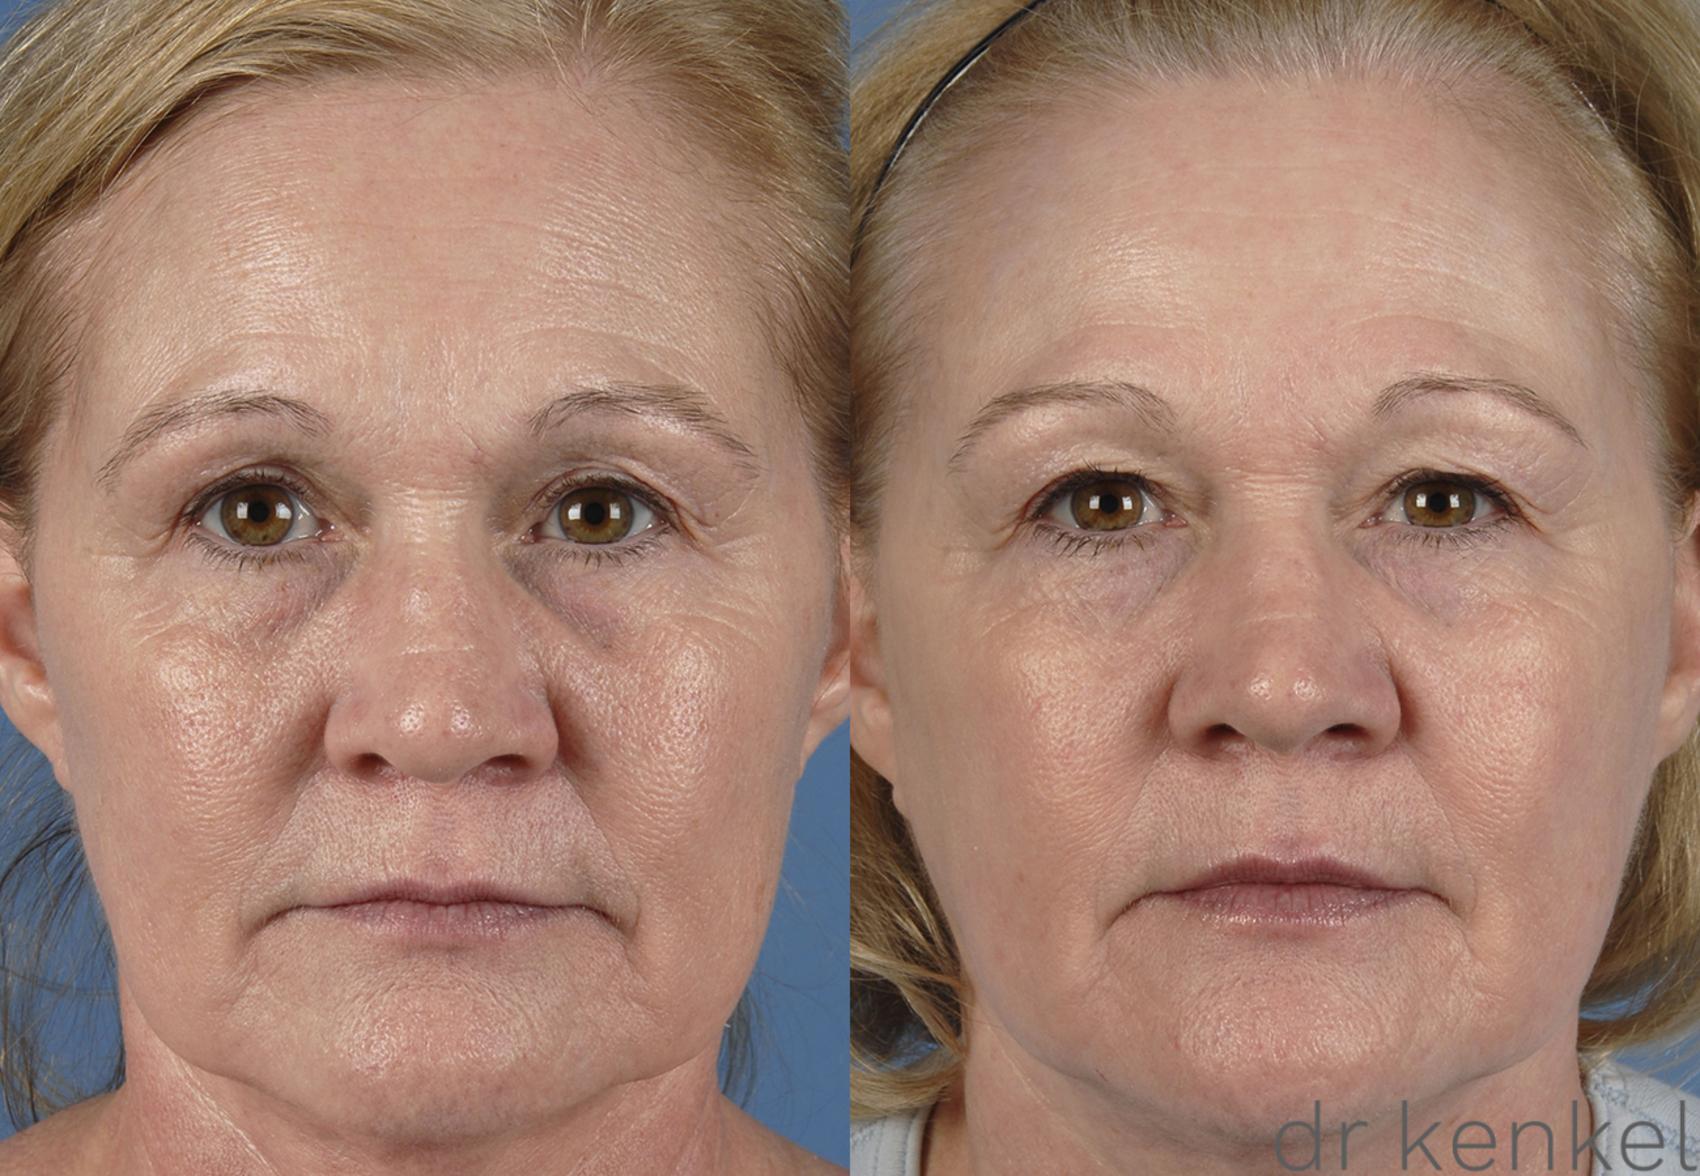 Before & After Laser Skin Resurfacing Case 155 View #1 View in Dallas, Frisco, Fort Worth, McKinney, Prosper, Allen, Celina, Denton, Anna, TX